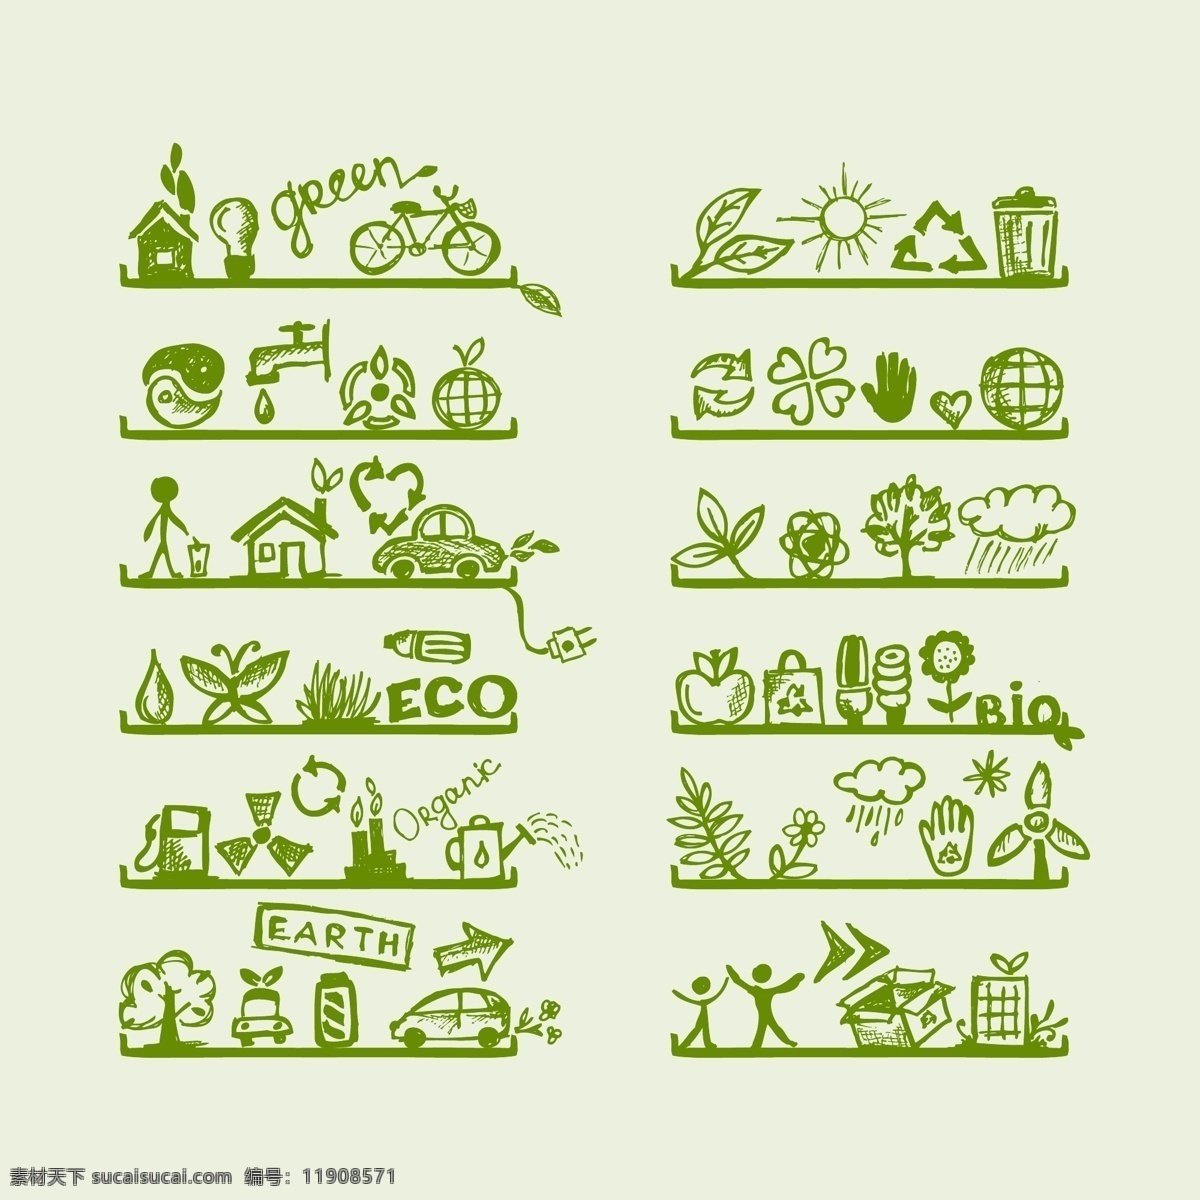 环保主题素材 环保素材 绿色 环保 环保主题 标志图标 矢量素材 白色